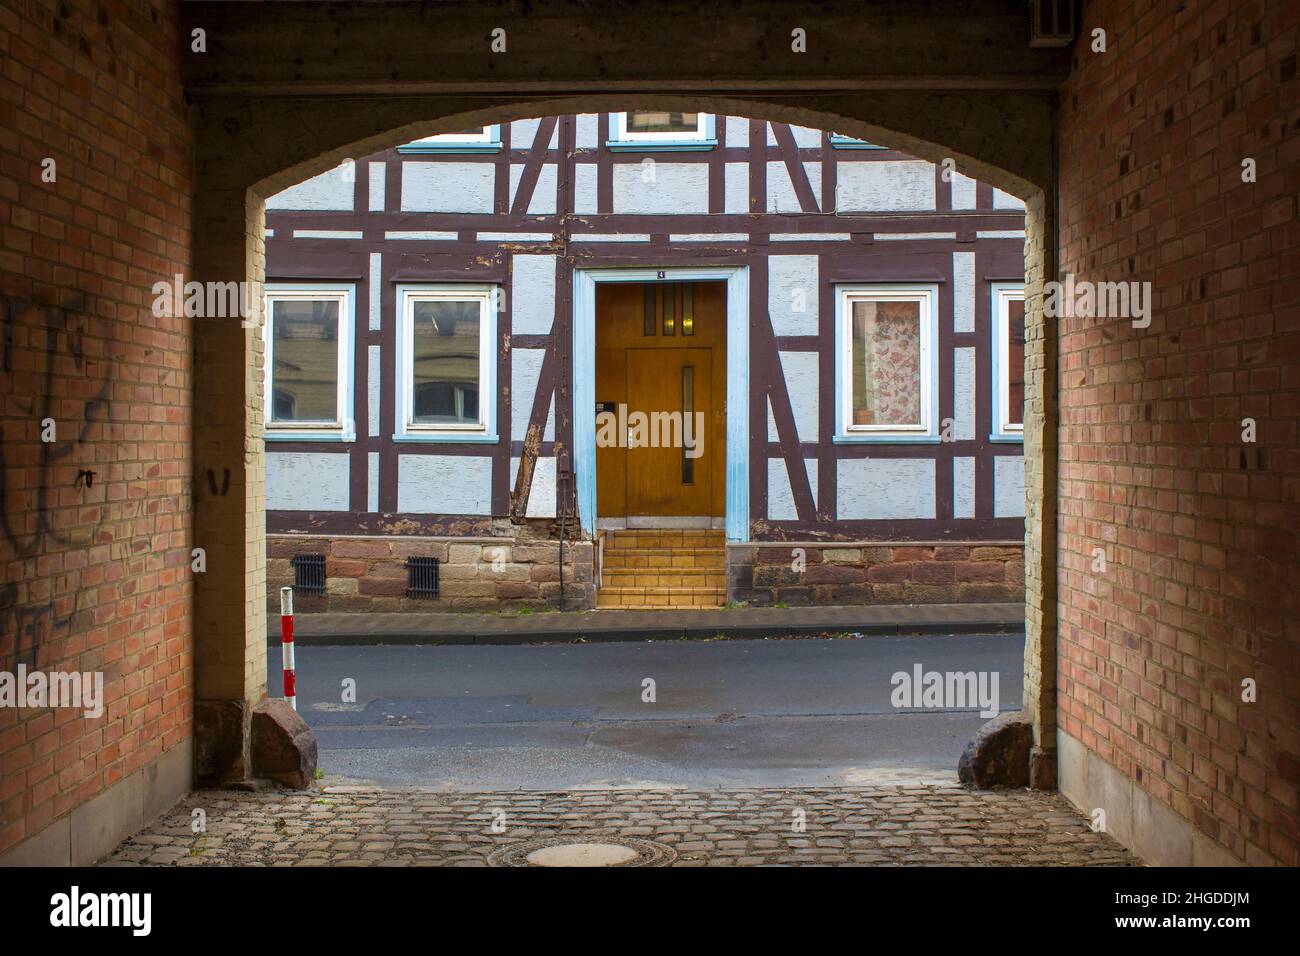 The Town of Witzenhausen in the Werra Valley in Germany, Hessen Stock Photo